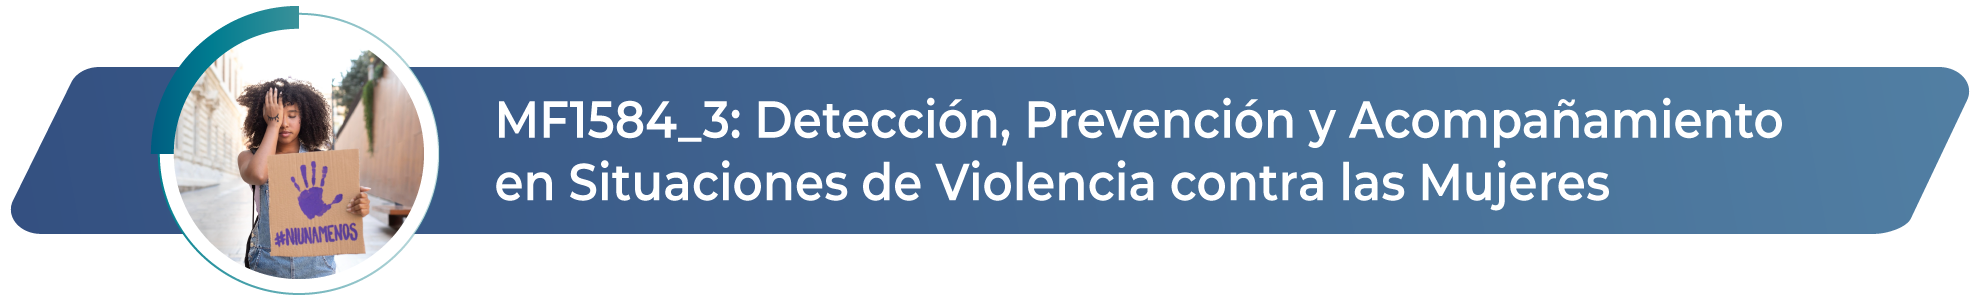 MF1584_3 - Detección, prevención violencia contra mujeres